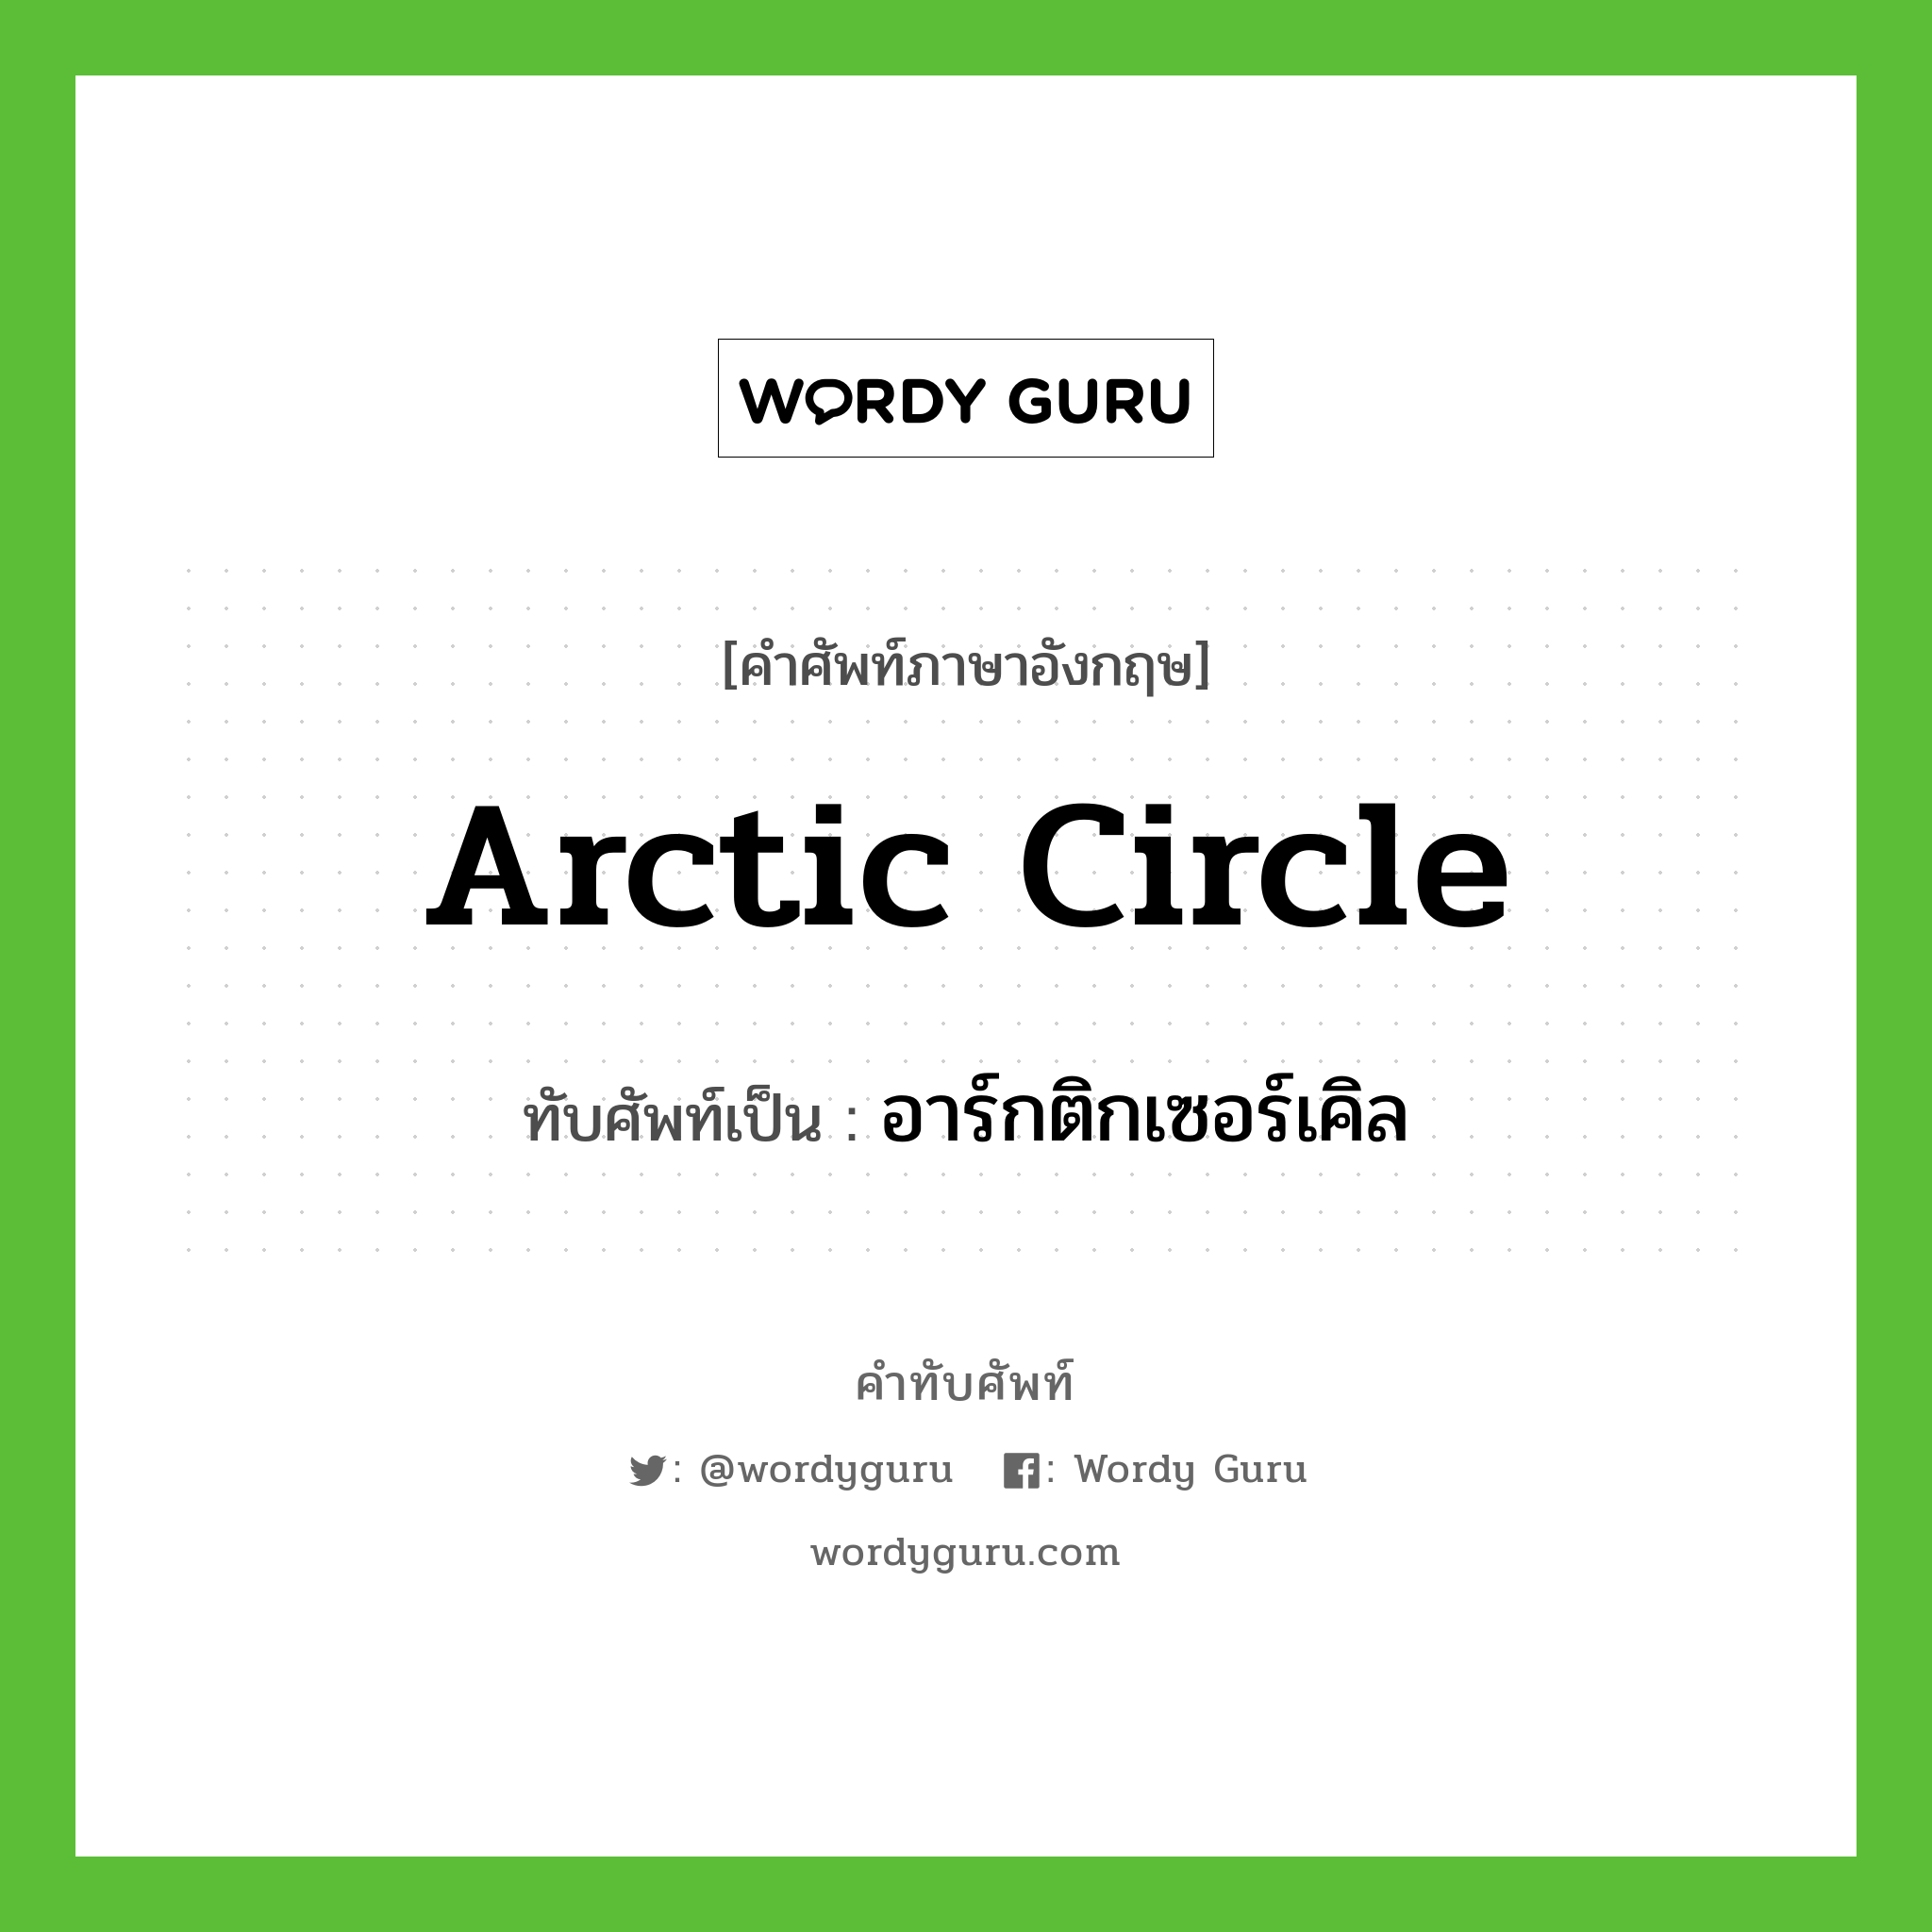 Arctic Circle เขียนเป็นคำไทยว่าอะไร?, คำศัพท์ภาษาอังกฤษ Arctic Circle ทับศัพท์เป็น อาร์กติกเซอร์เคิล